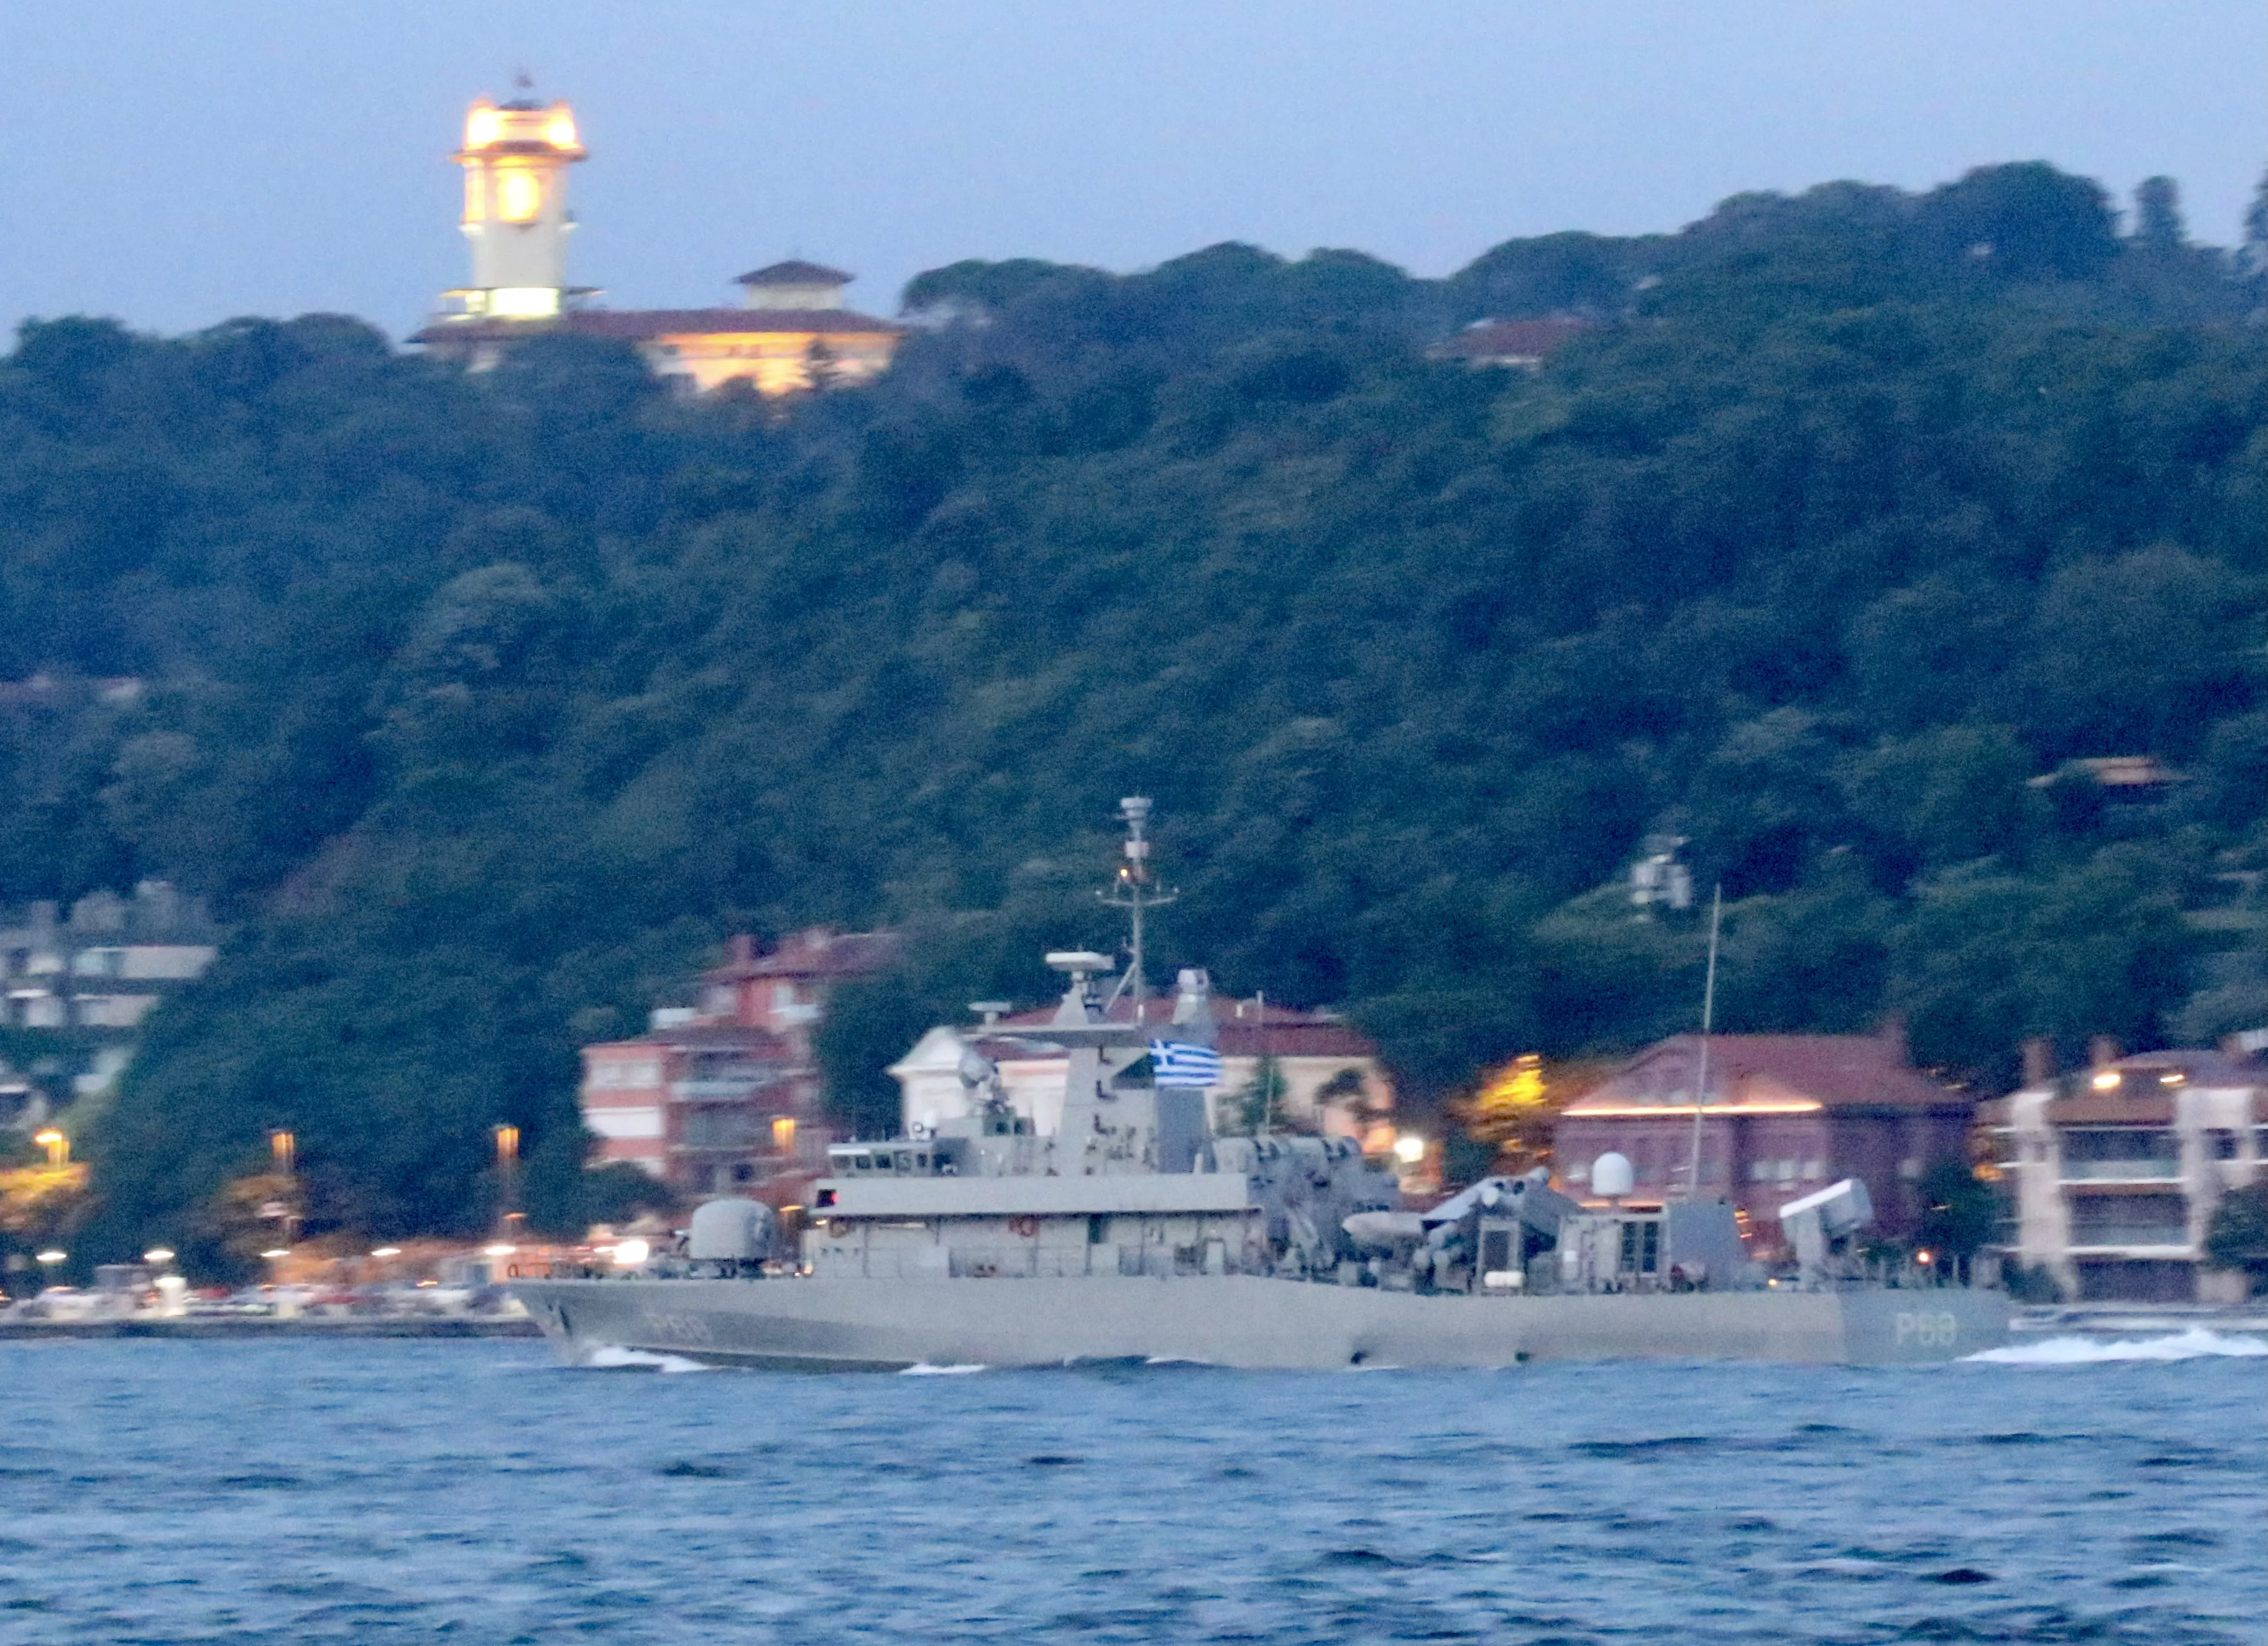 Катер ВМС Греции Ypoploiarchos Daniolos пересек Босфор 10 июля. twitter.com/YorukIsik